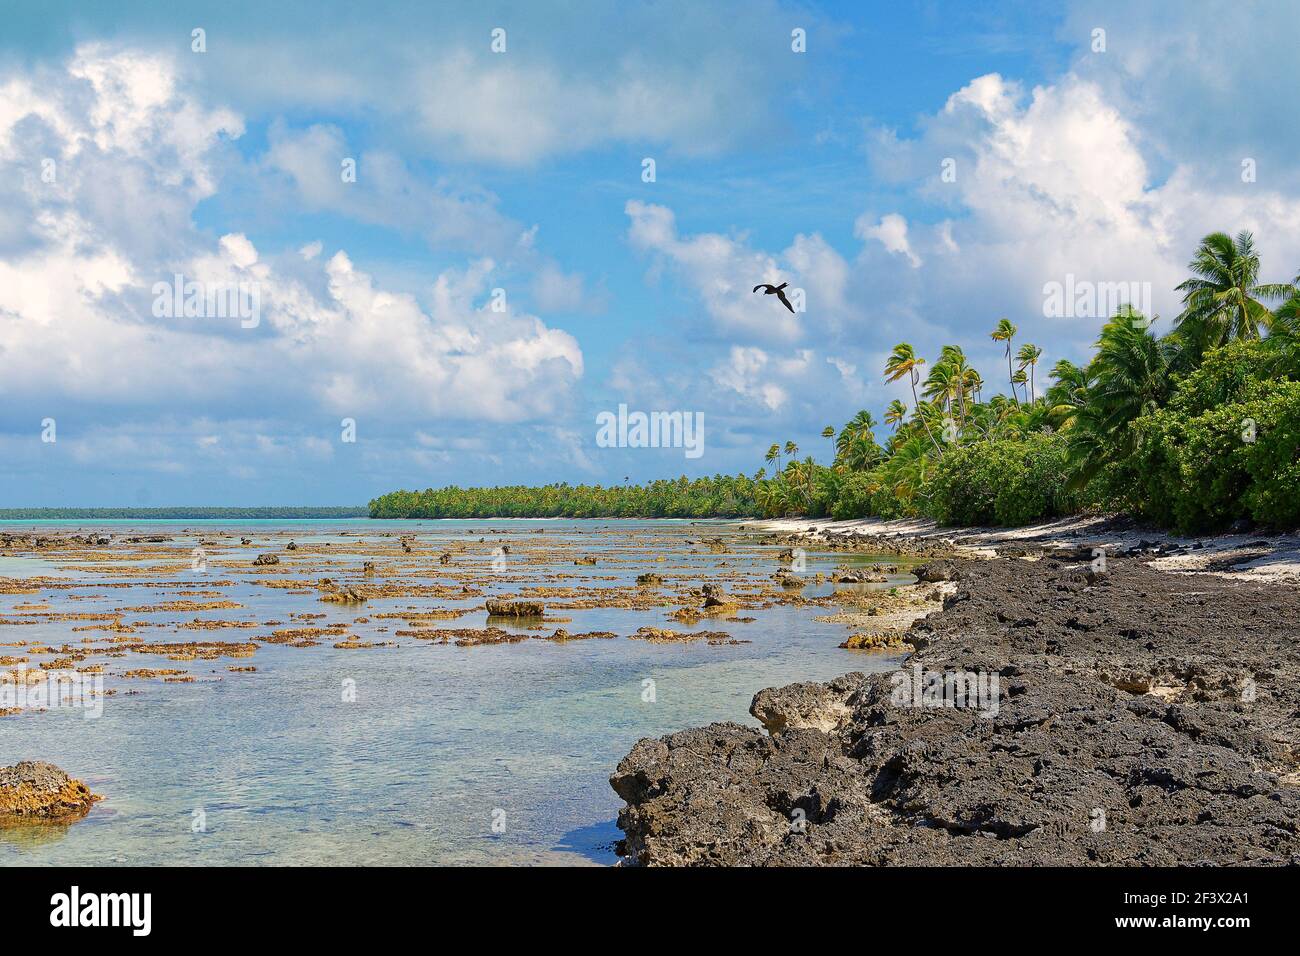 Französisch-Polynesien, Windward-Inseln, Gesellschaftsinseln: Natur und Vegetation am Ufer einer Lagune von Tetiꞌaroa Stockfoto